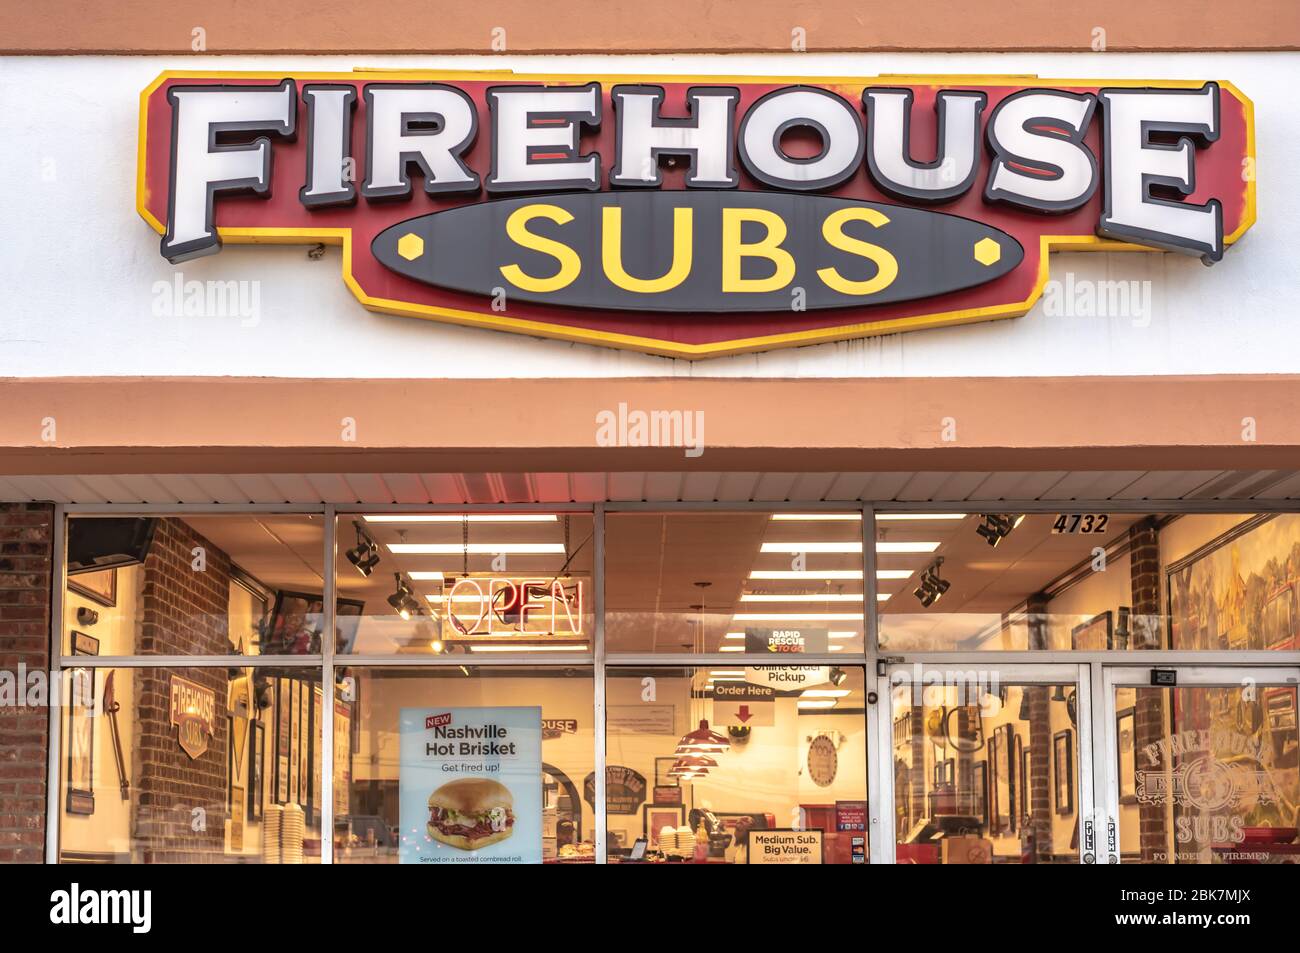 Charlotte, NC/USA - 26 dicembre 2019: Facciata del panino "Firehouse Subs" che mostra la segnaletica con marchio/logo e gli interni illuminati del ristorante. Foto Stock